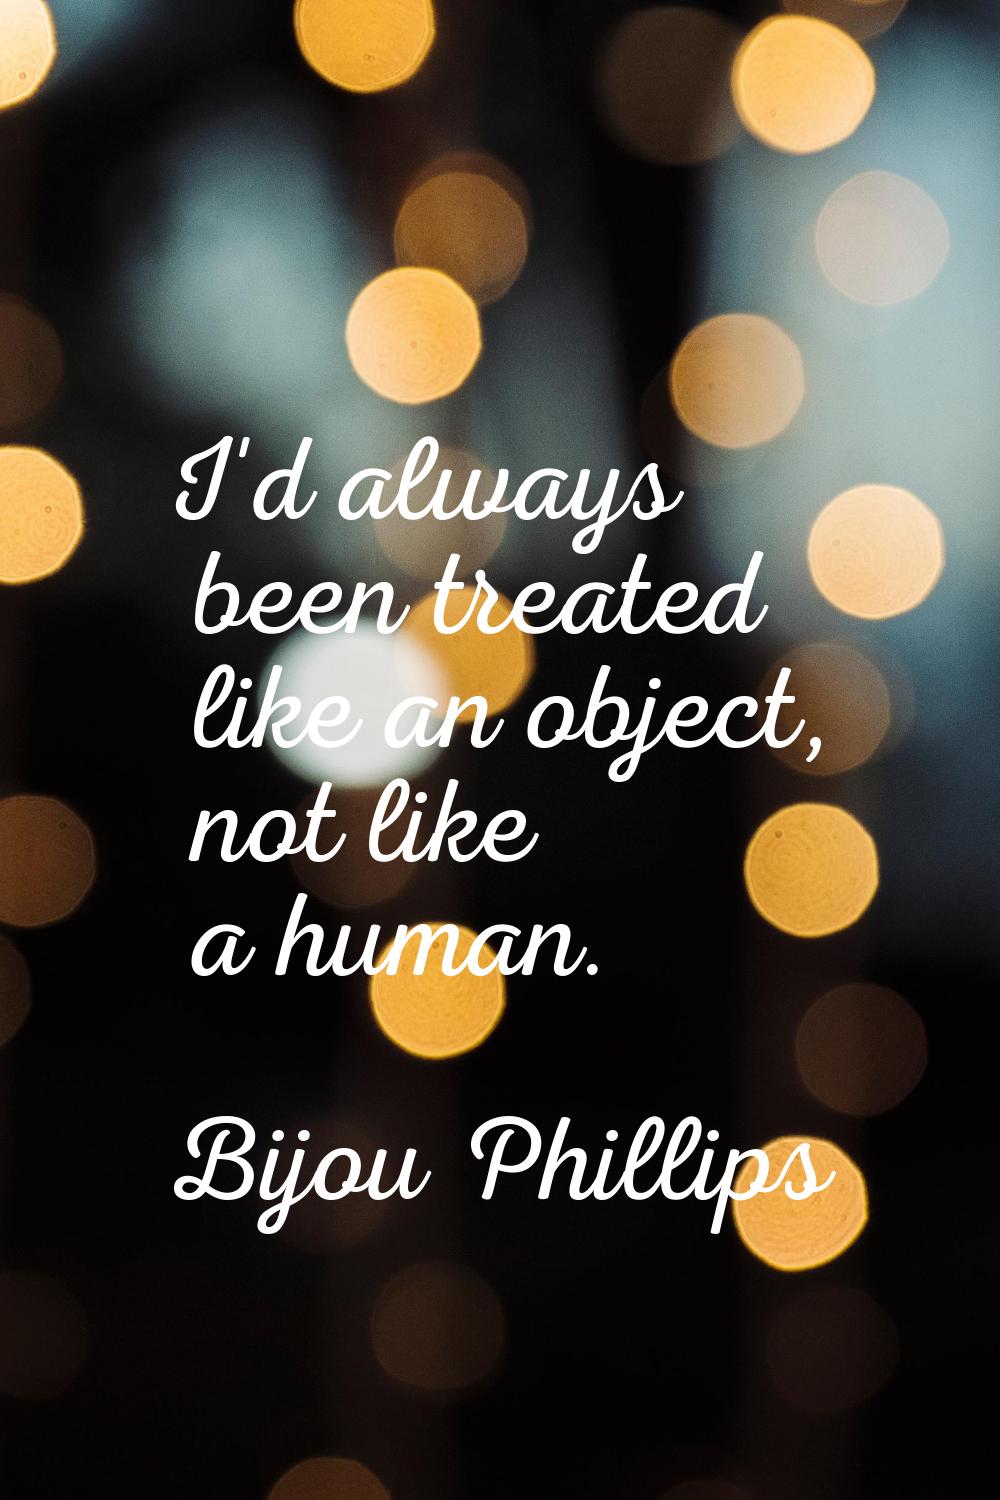 I'd always been treated like an object, not like a human.